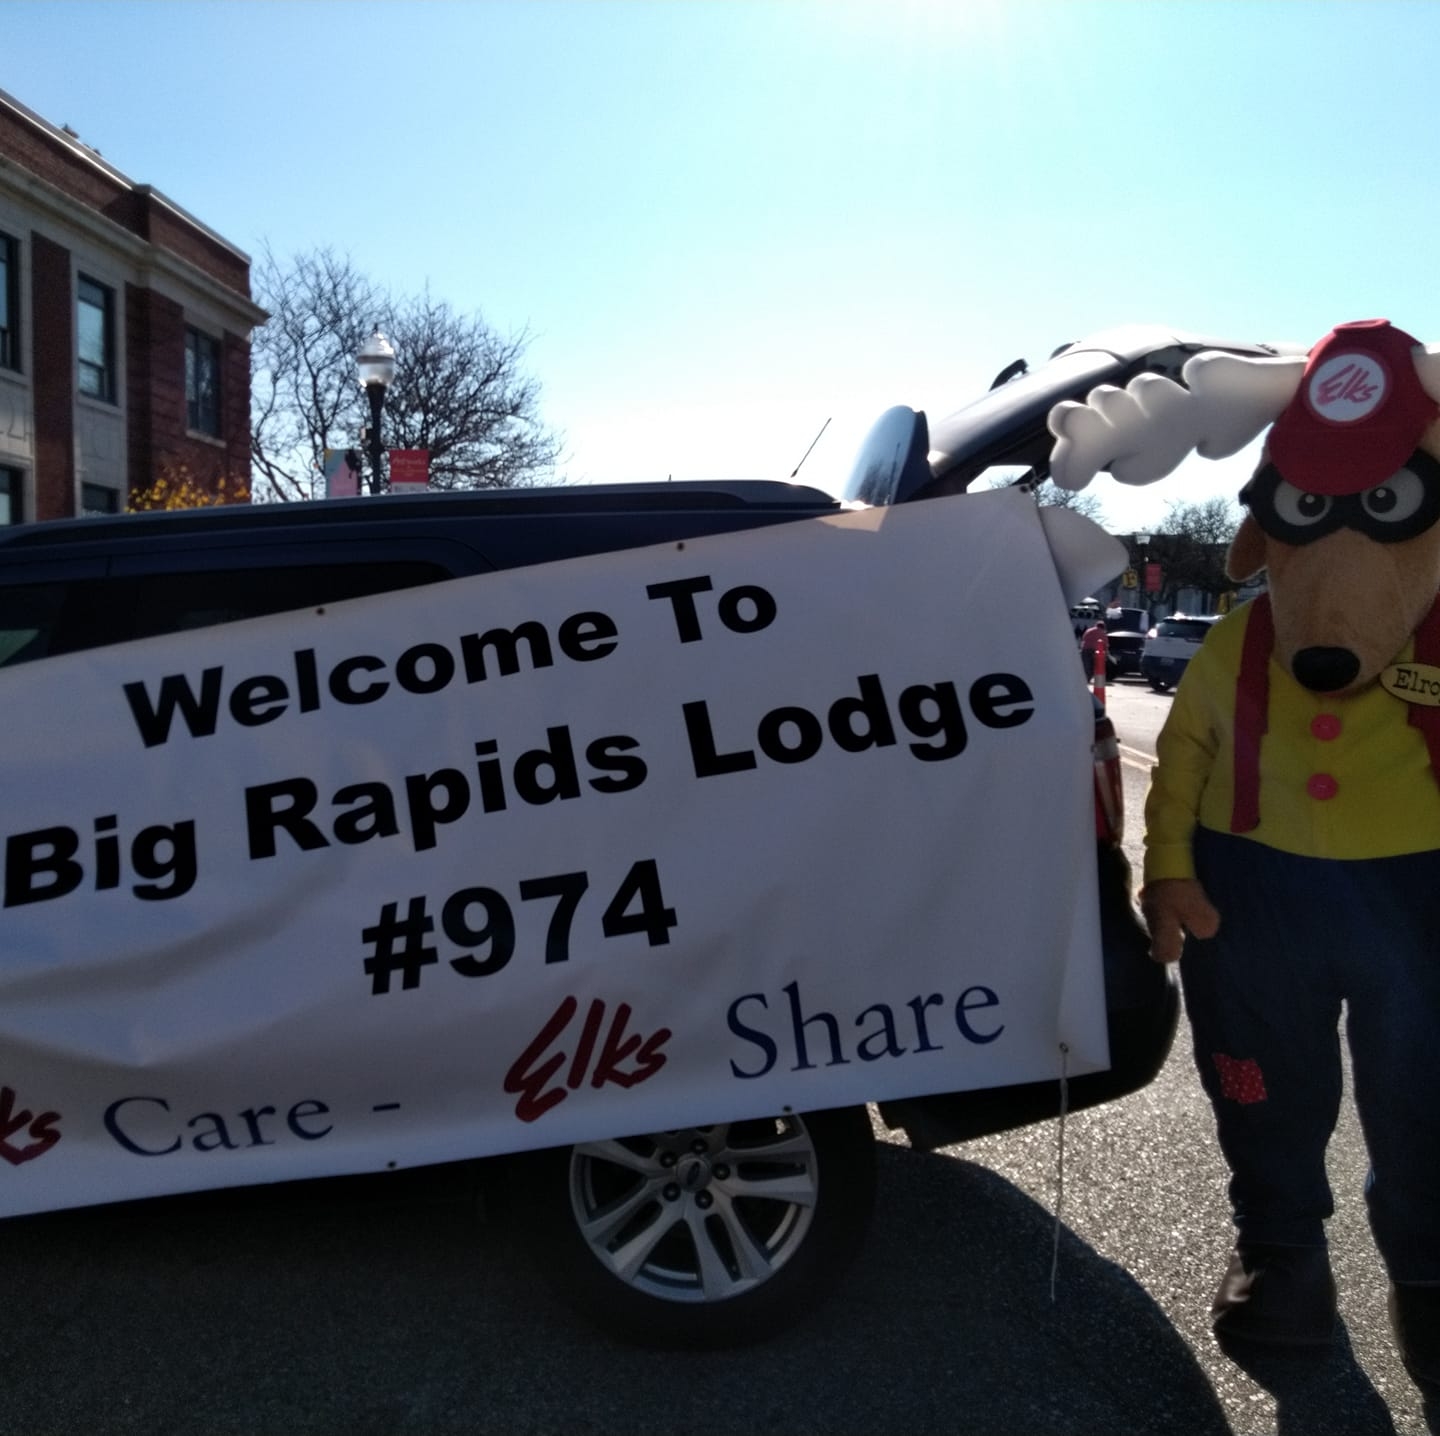 Big Rapids #974